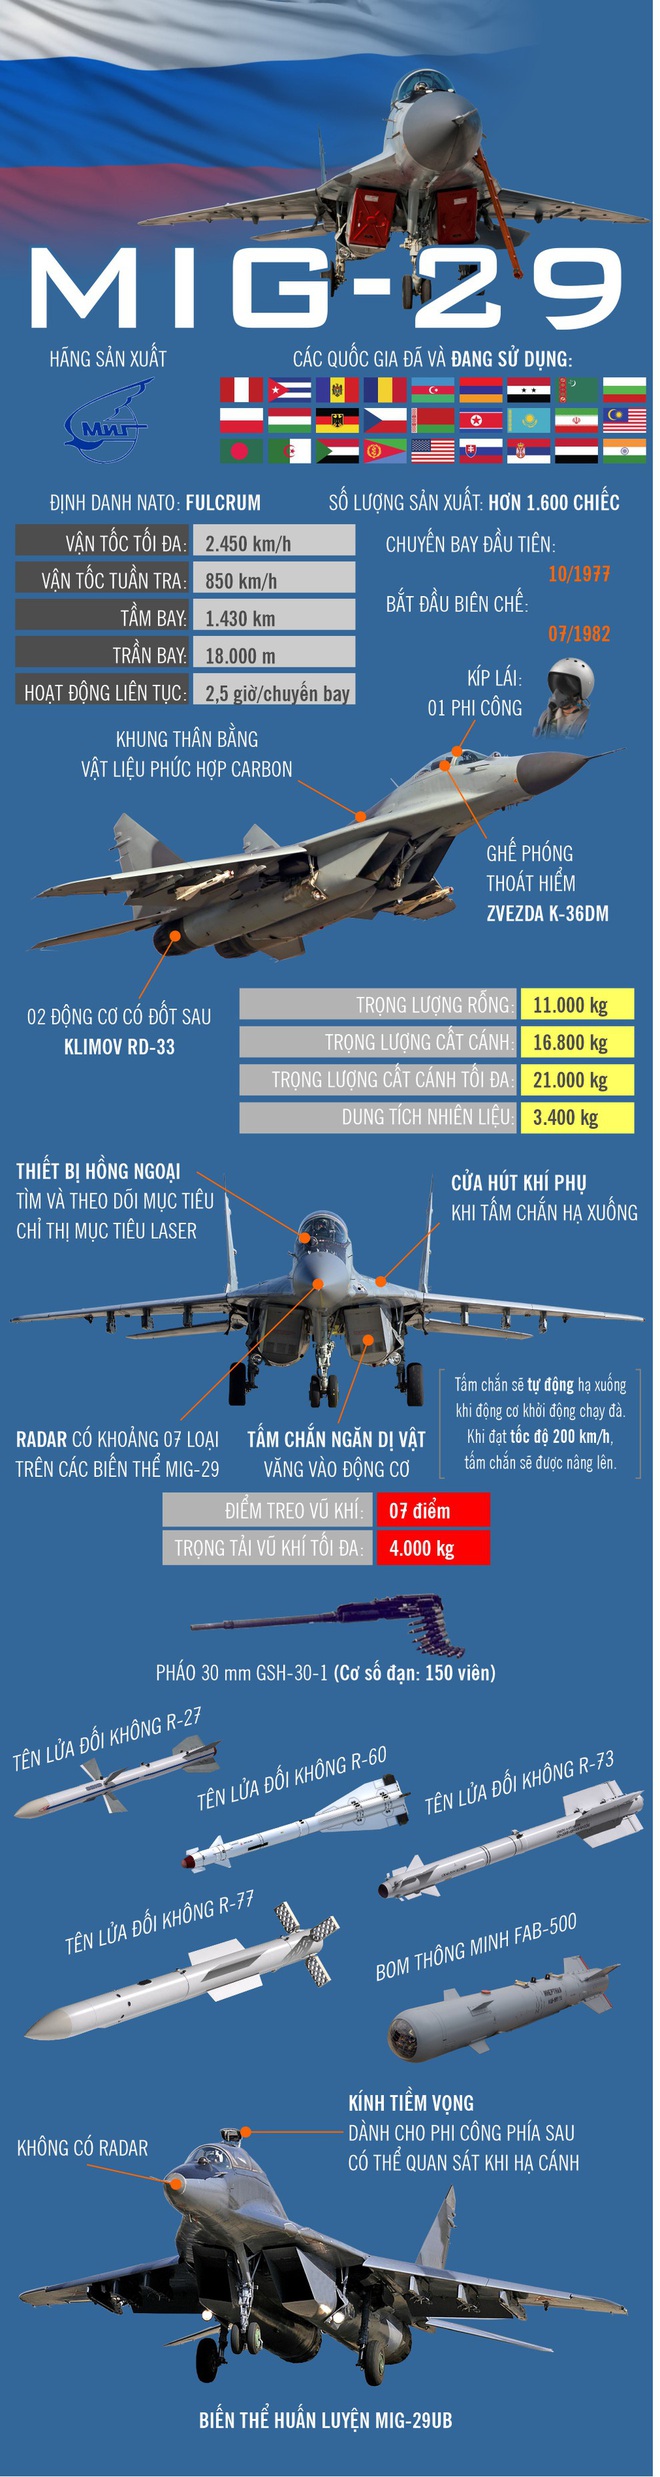 Infographic: Máy bay tiêm kích MiG-29 của Không quân Triều Tiên - Ảnh 1.